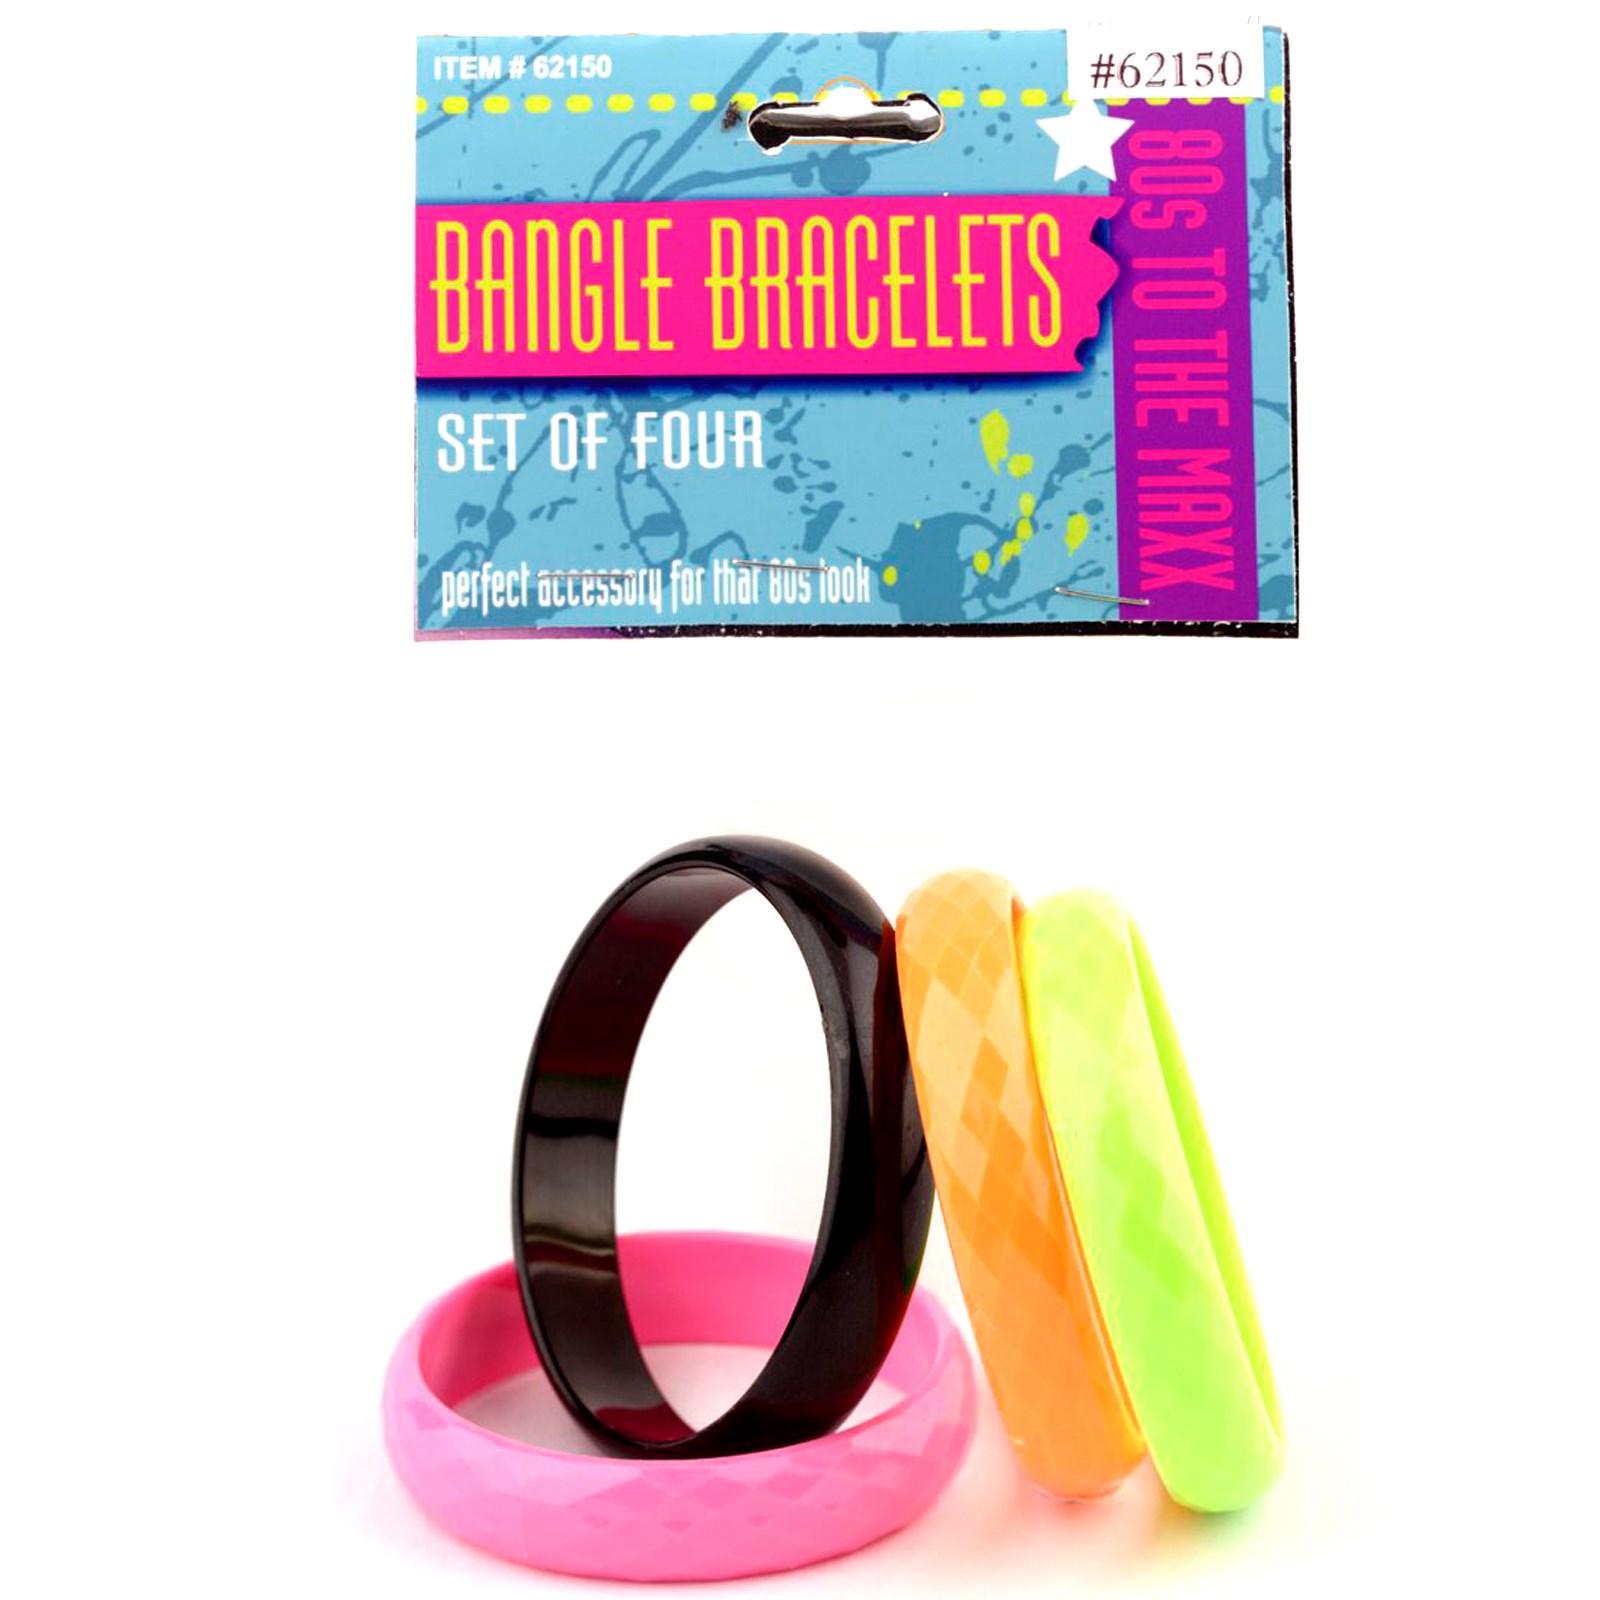 80s Bangle Bracelet Set 4 piece